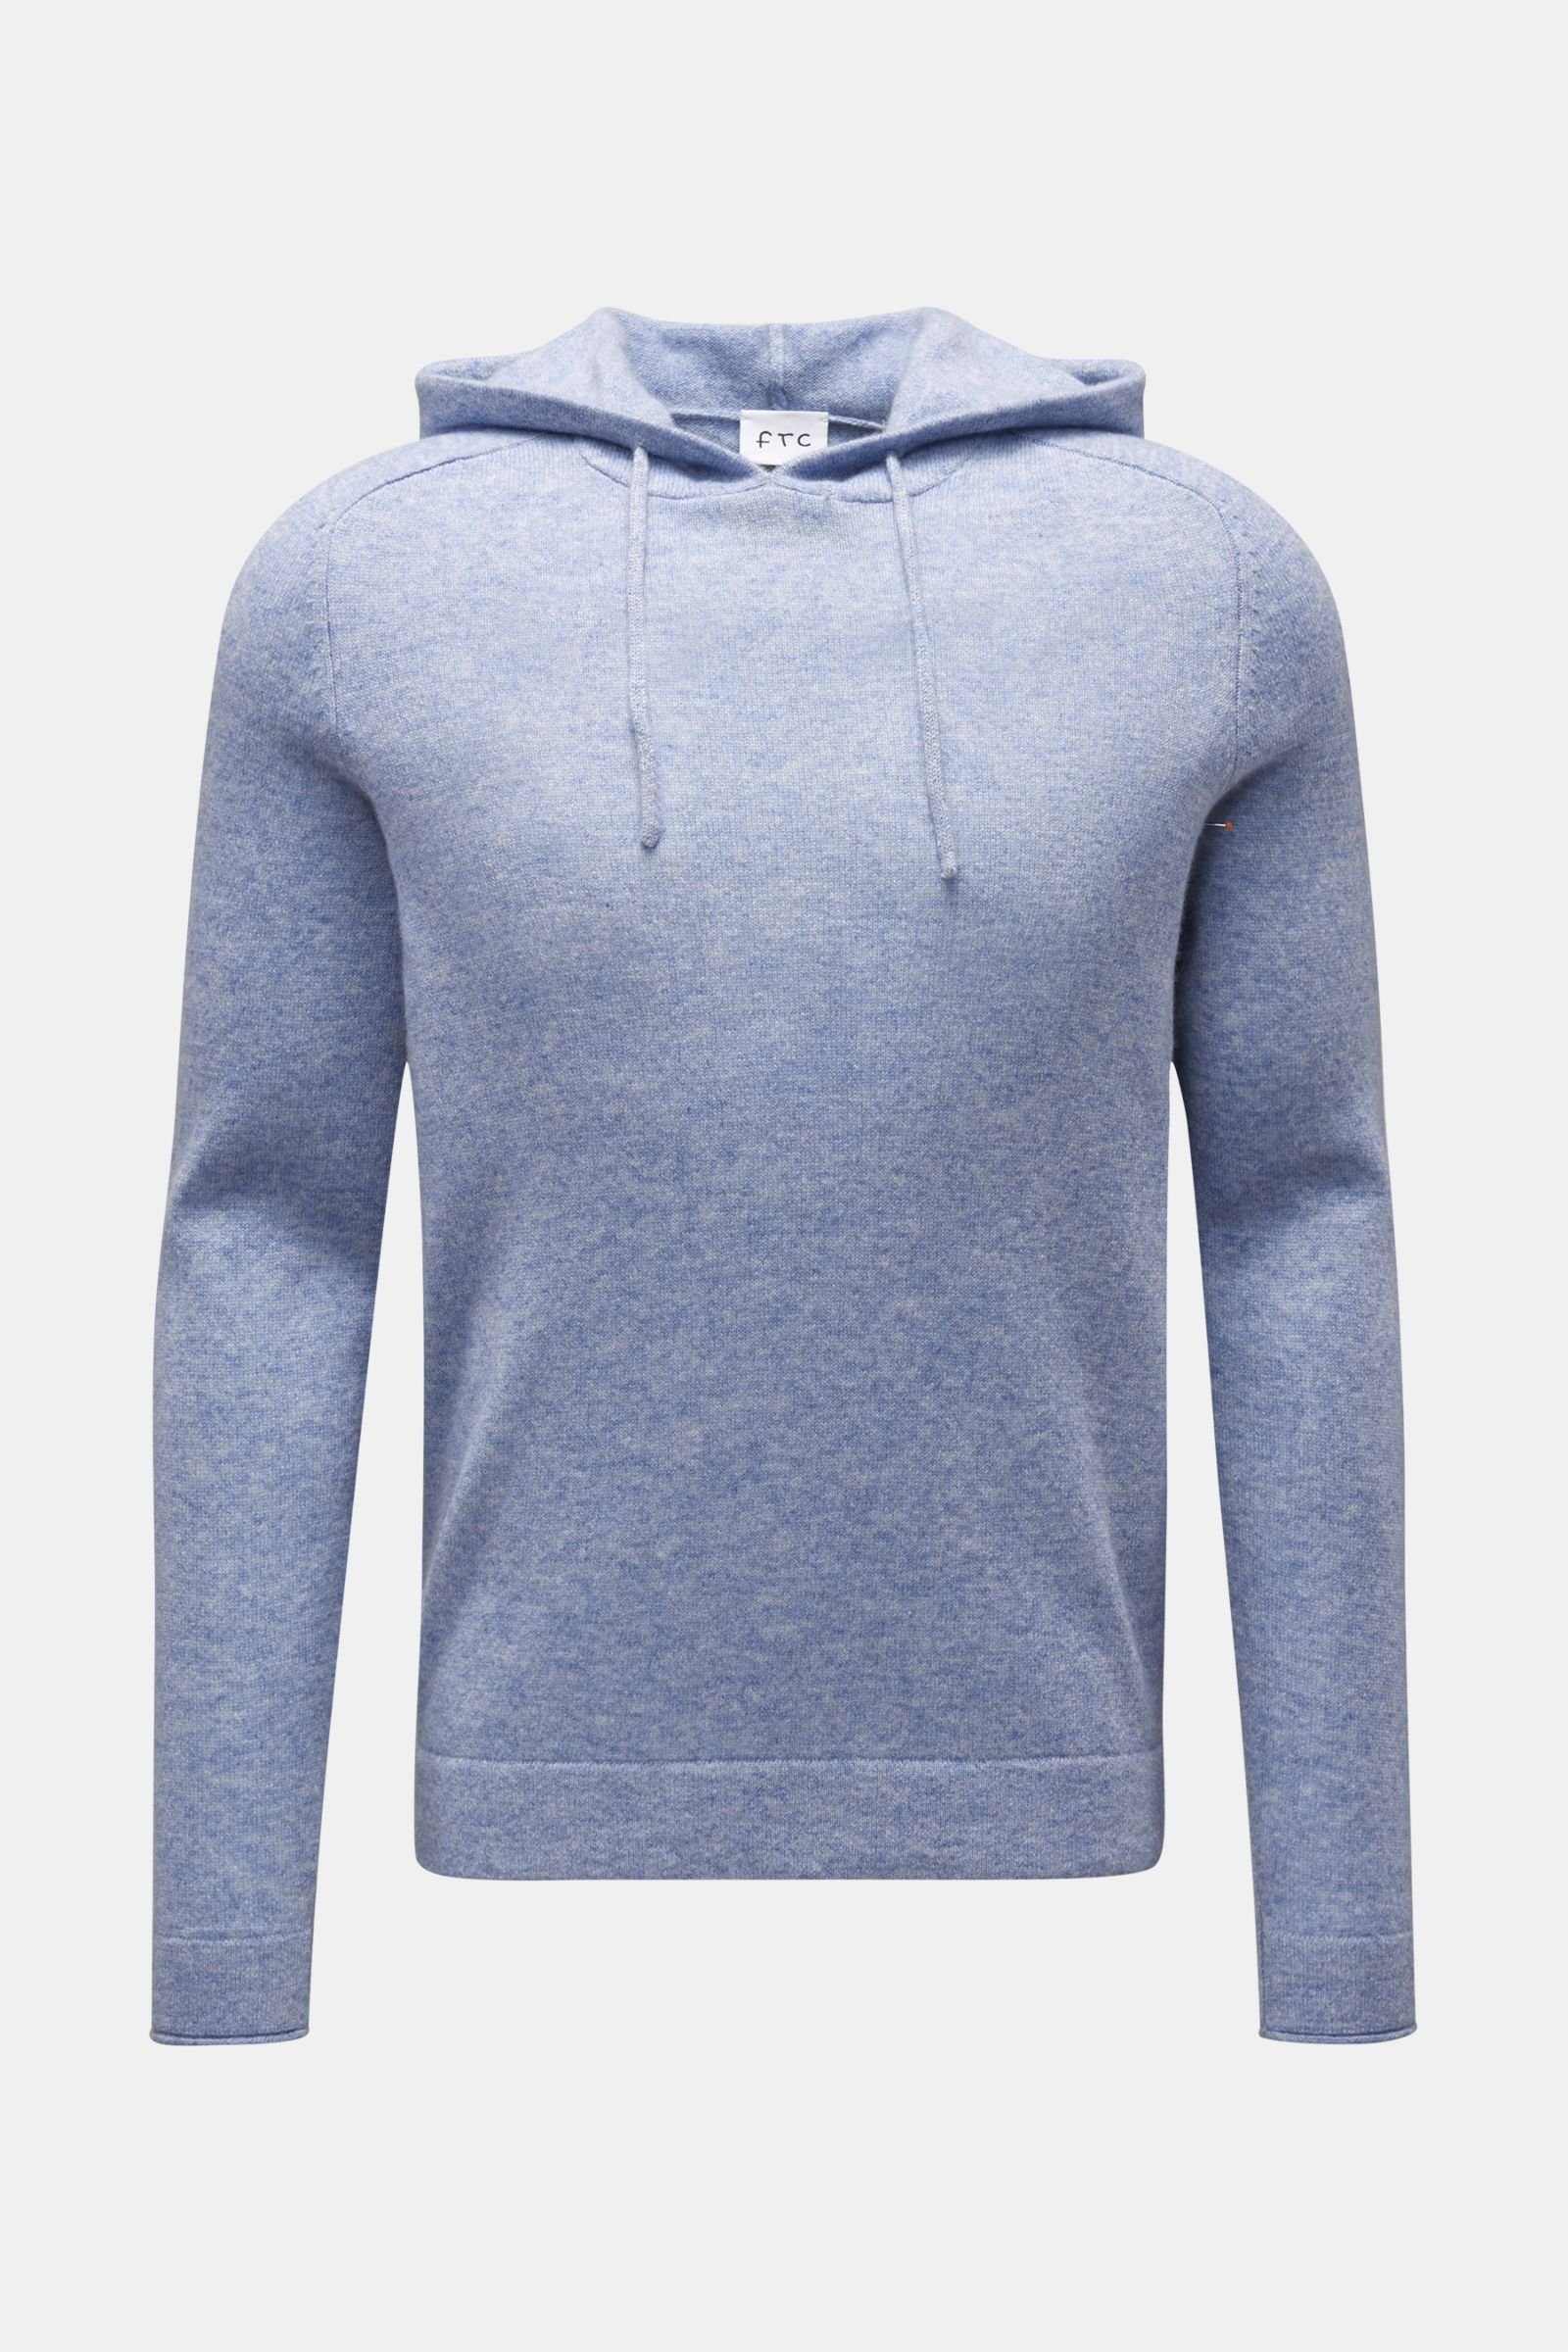 Cashmere hooded jumper grey-blue